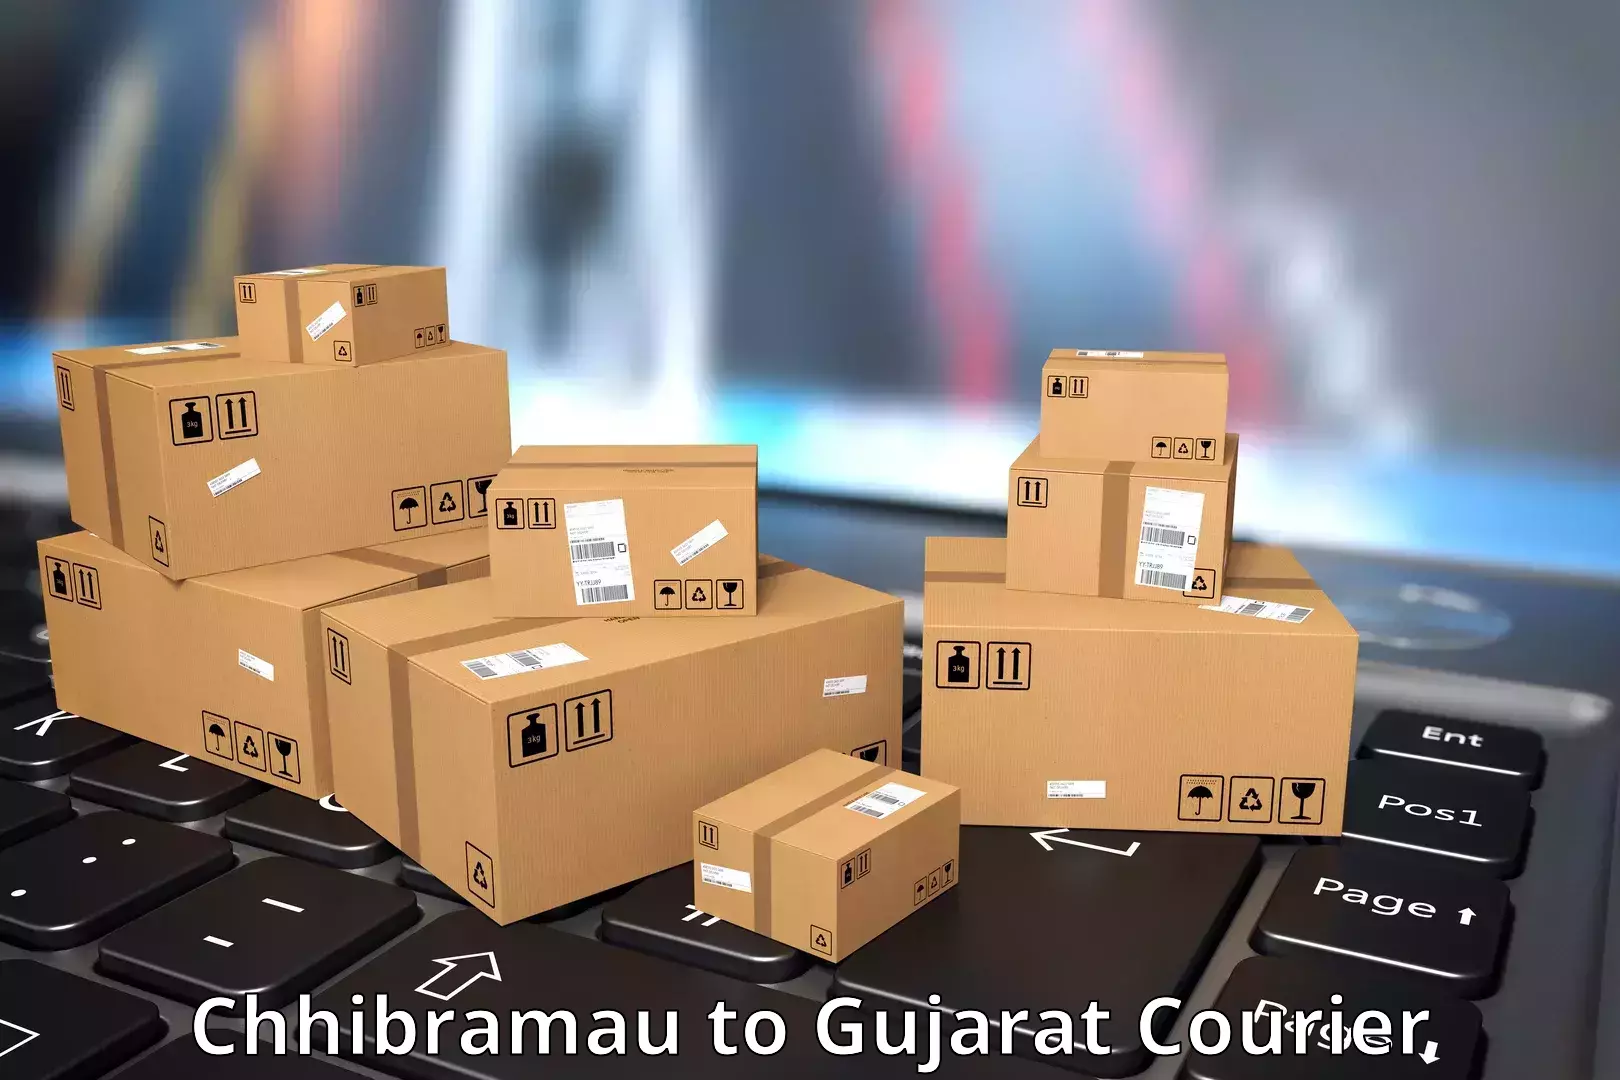 Express package services Chhibramau to Gujarat